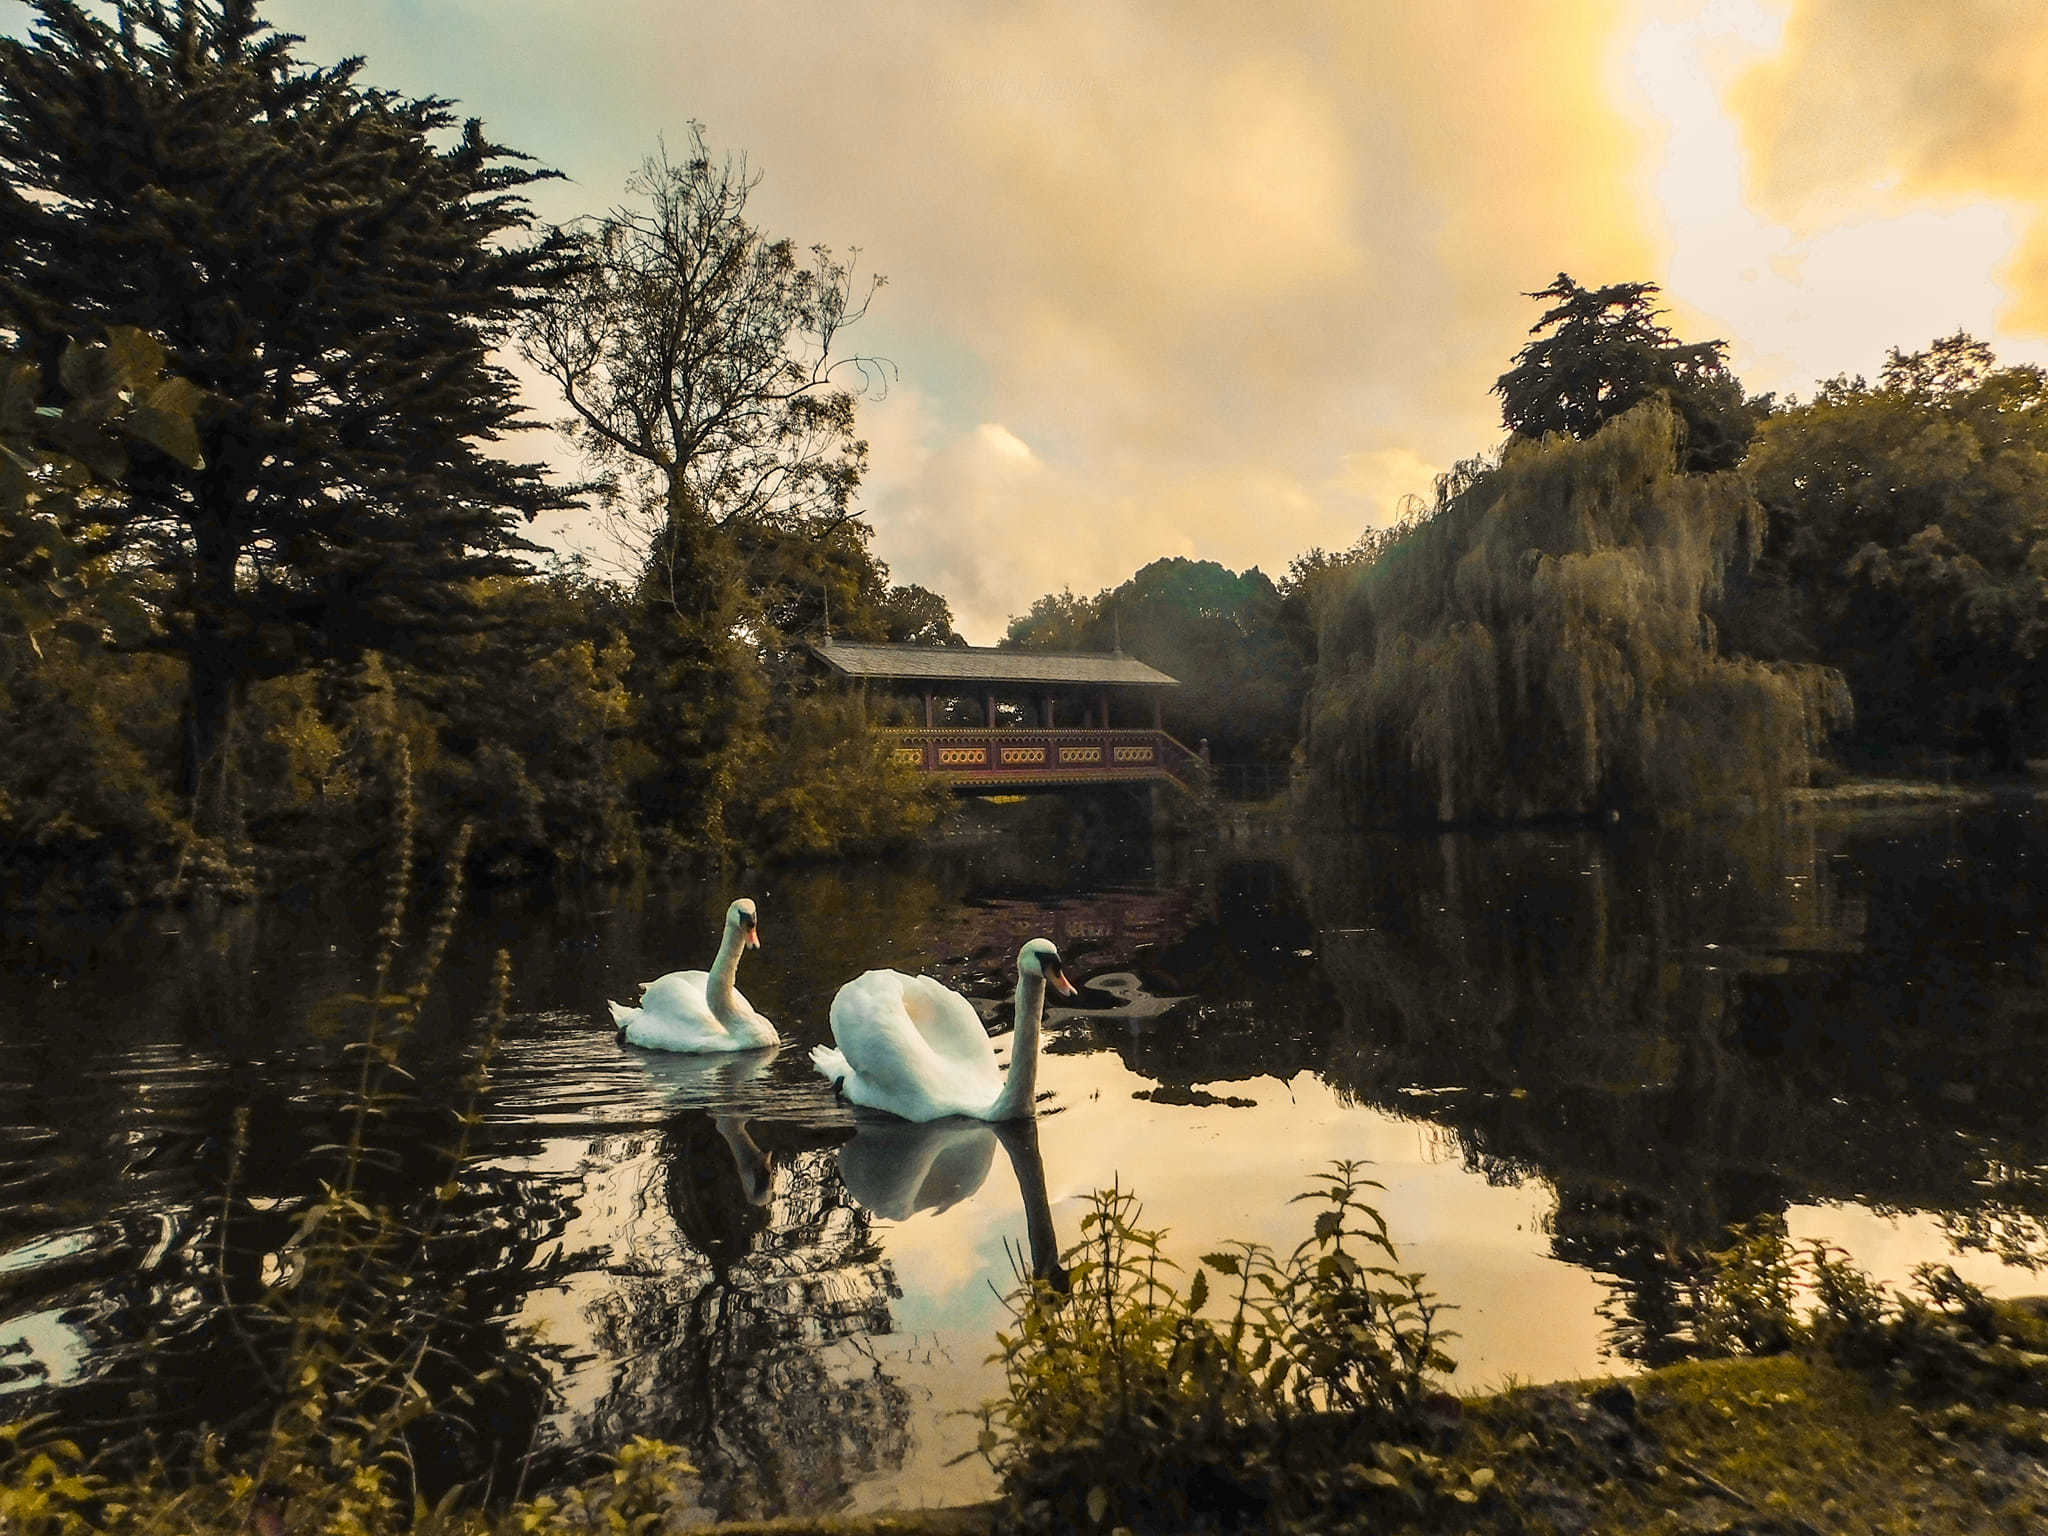 Two swans at Birkenhead Park by Nicola Jayne